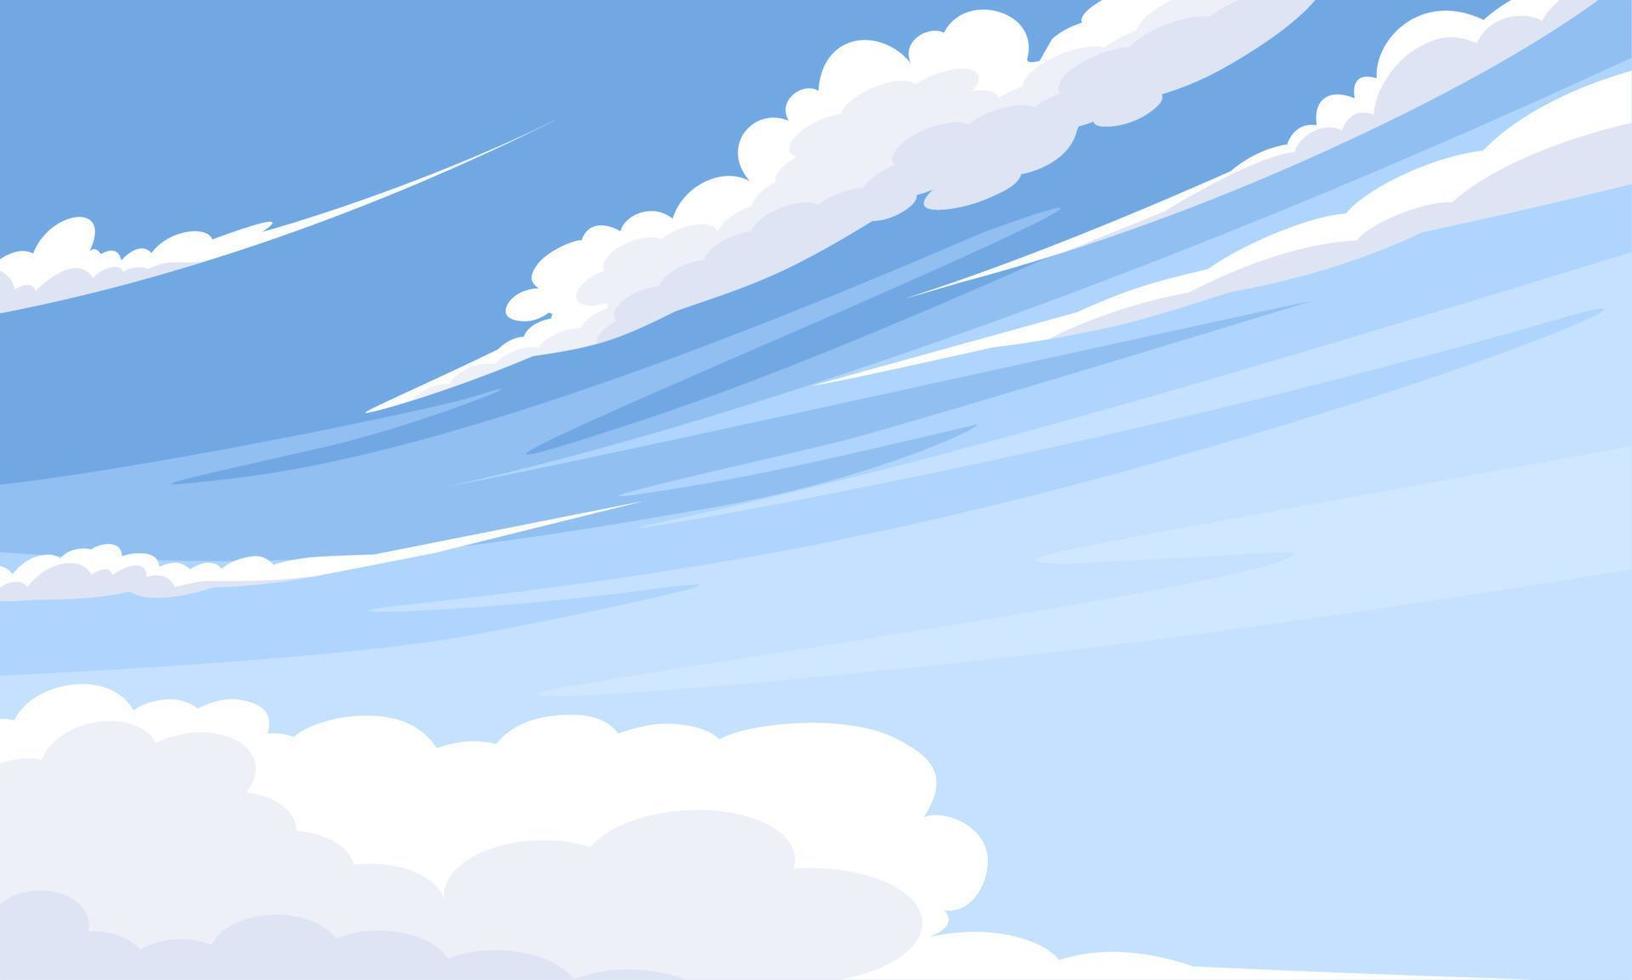 illustrazione vettoriale, cielo blu con nuvole bianche, come immagine di sfondo o banner, giornata internazionale dell'aria pulita per i cieli blu. vettore